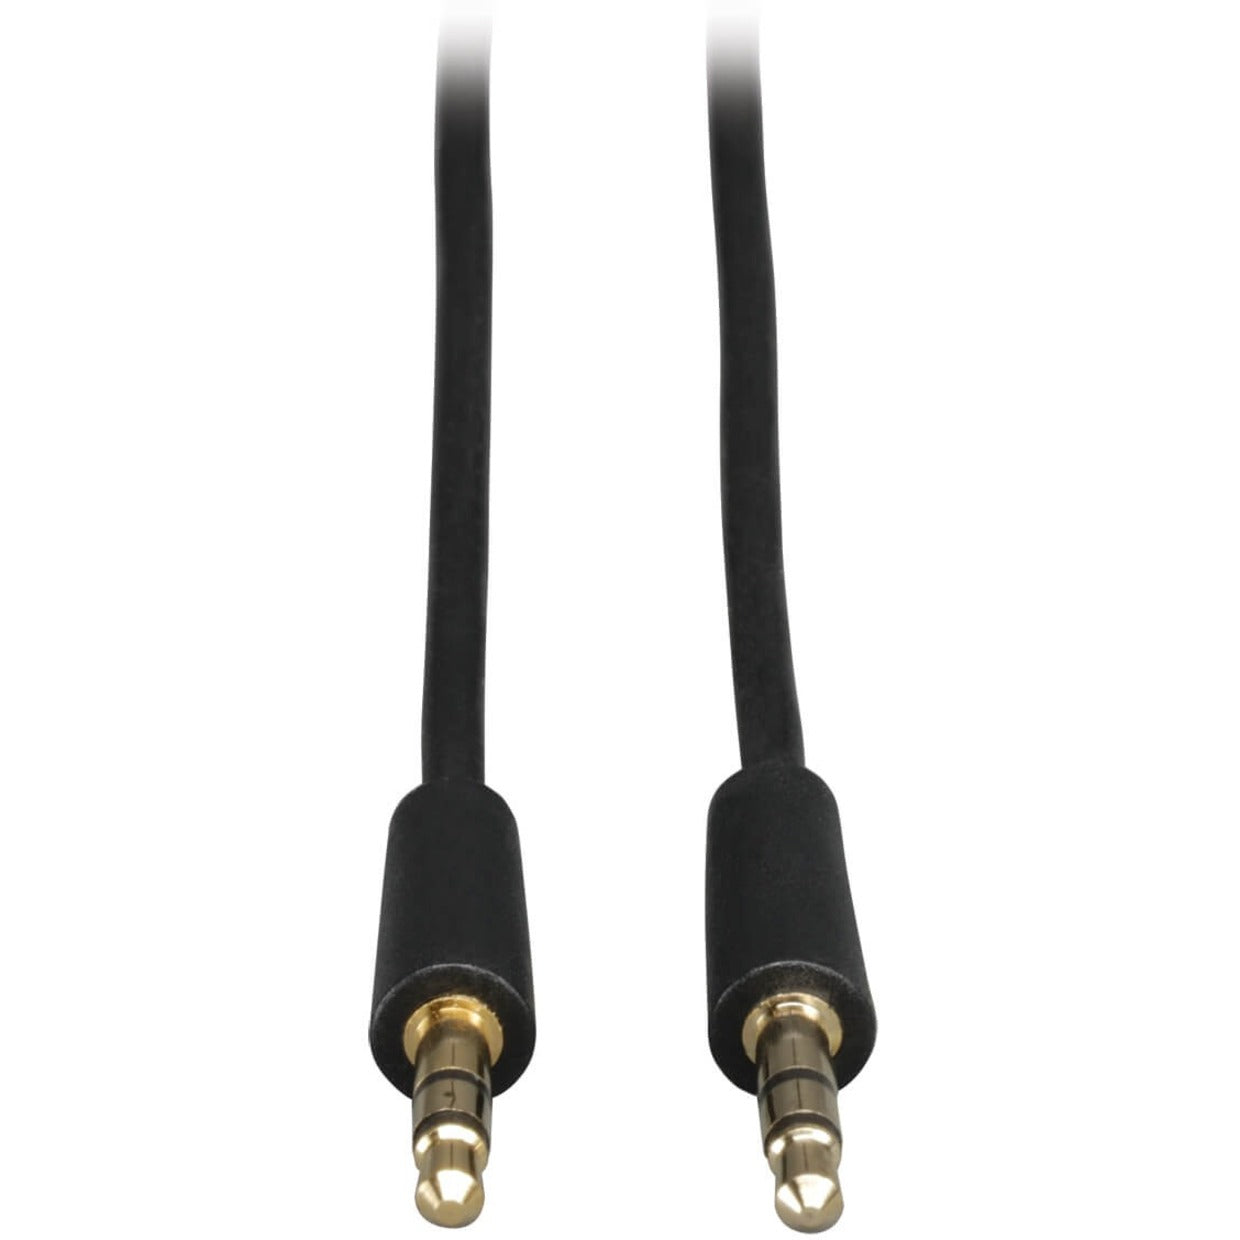 Tripp Lite P312-050 Mini-Stereo Dubbing Cord, 50 ft Audio Cable, Lifetime Warranty